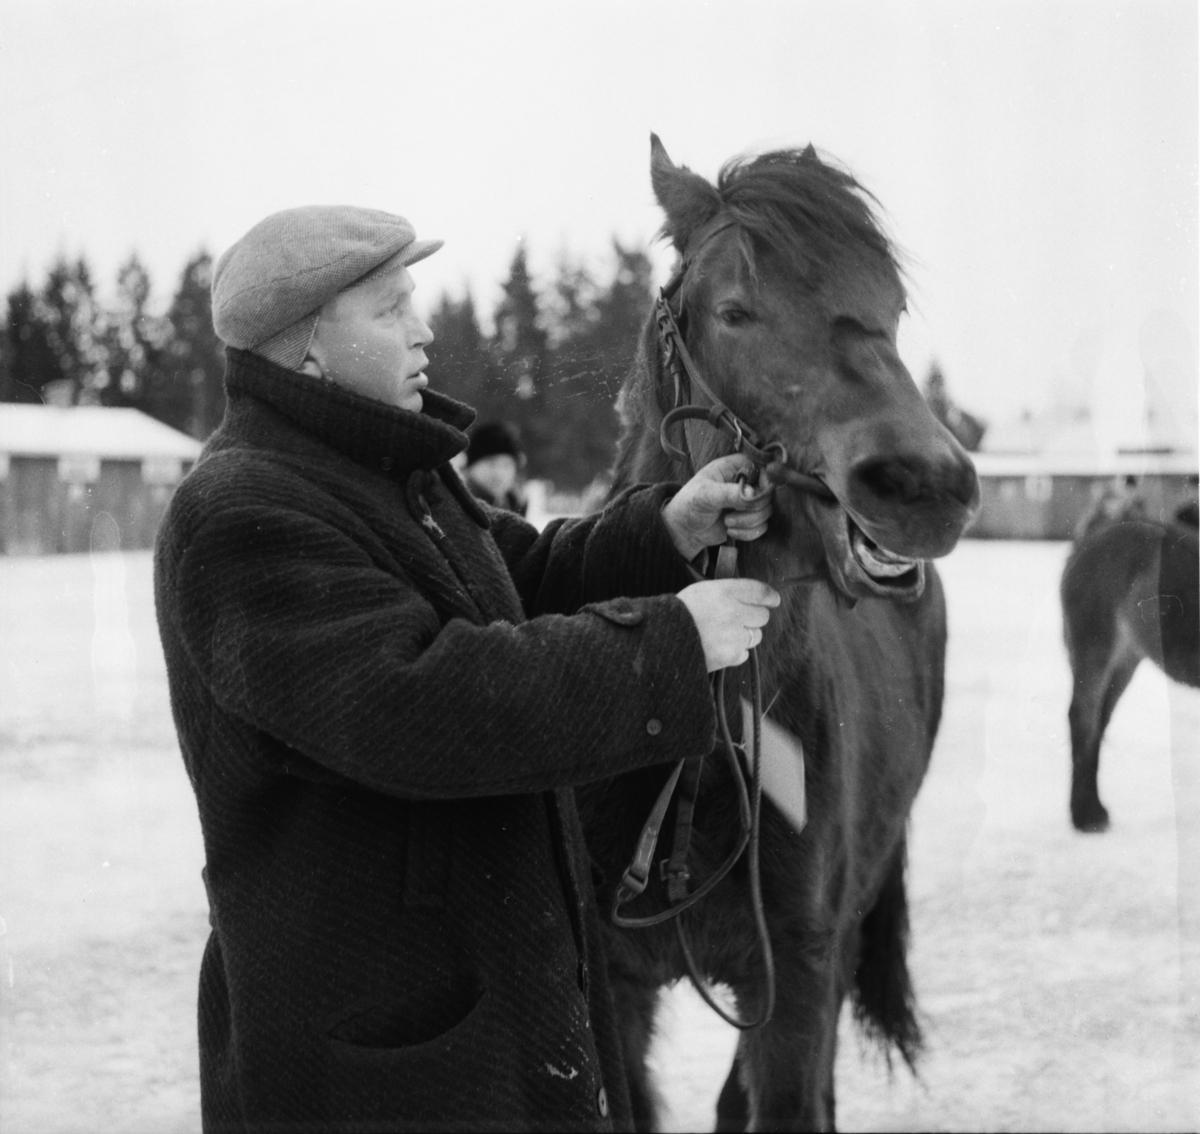 Vardens arkiv. "Hestesjå på Klosterskogen"  21.01.1954